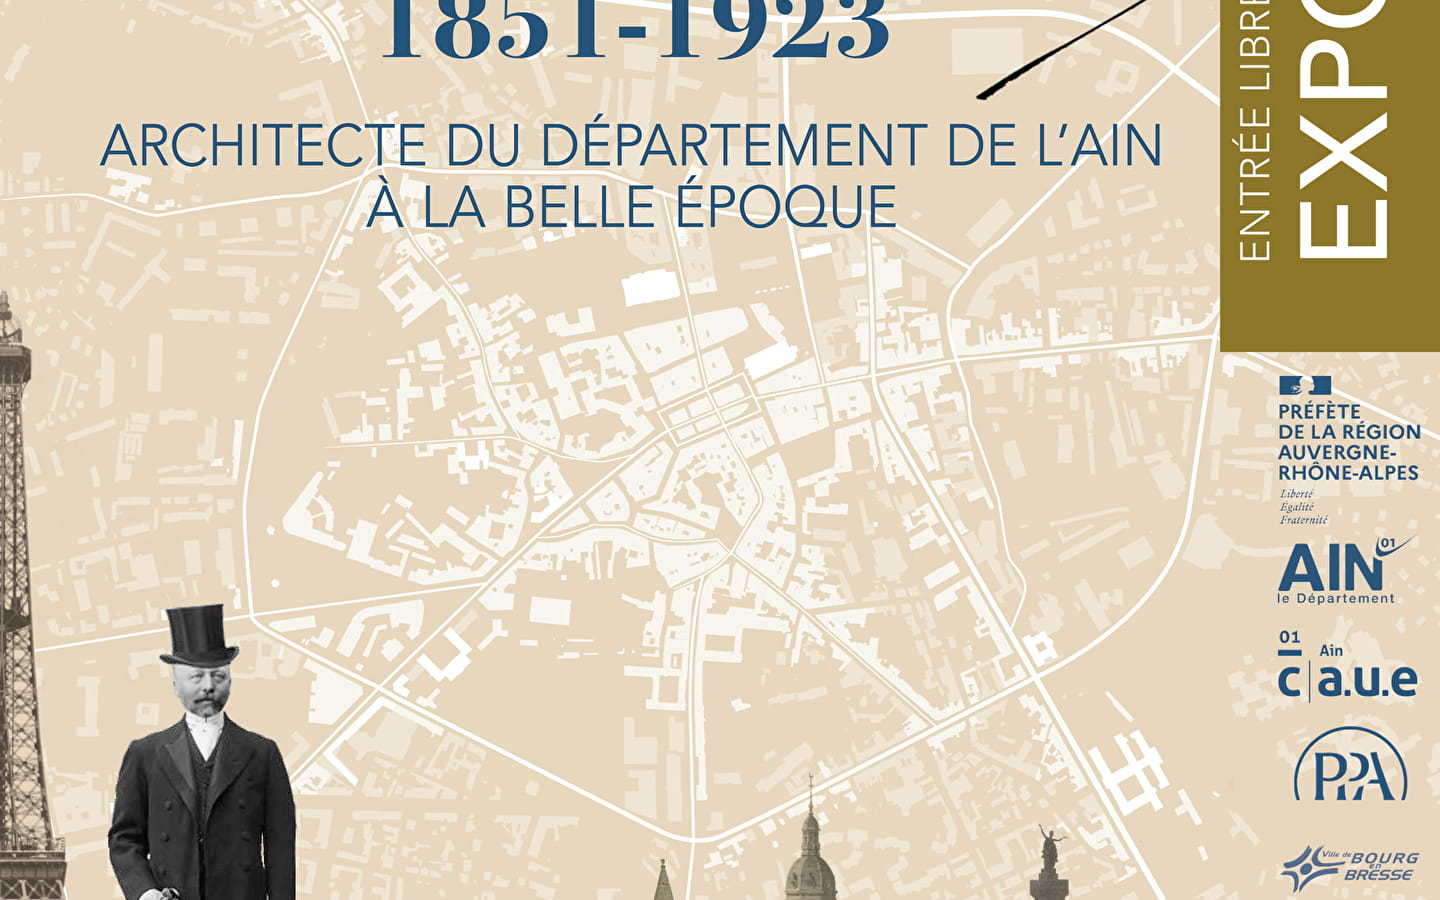 Exposition Tony FERRET, 1851-1923, architecte du Département de l'Ain à la belle époque